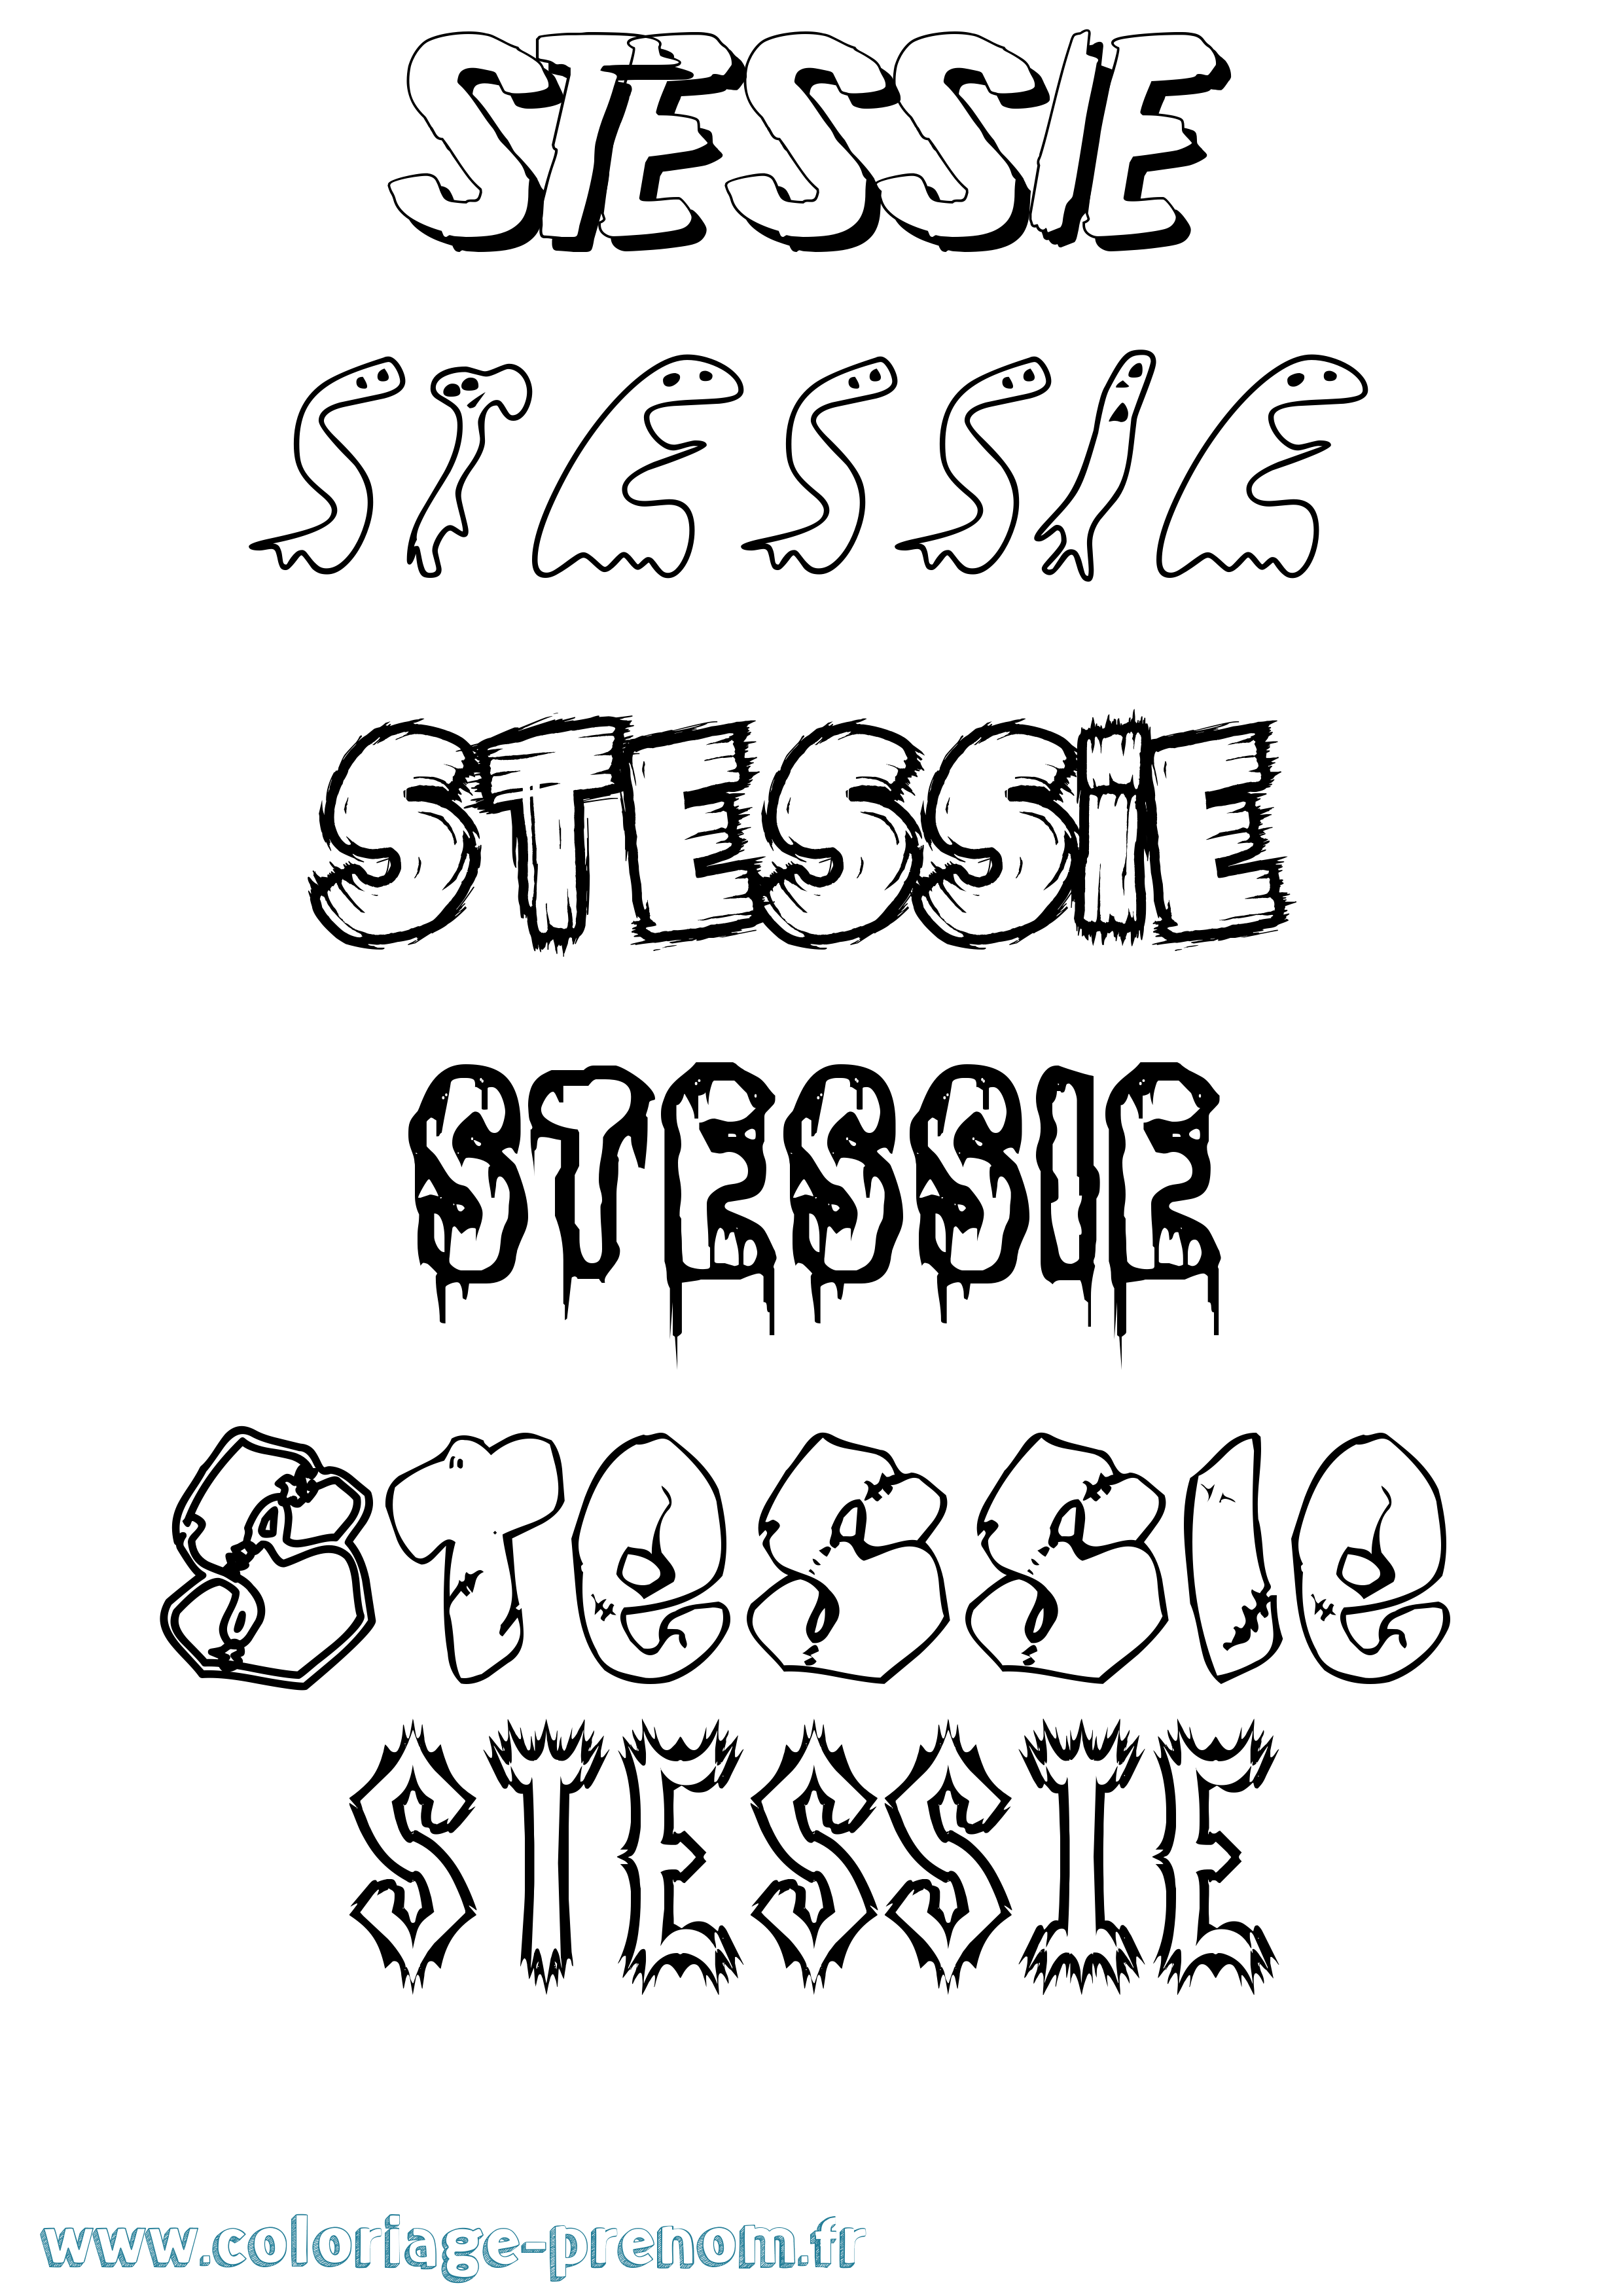 Coloriage prénom Stessie Frisson